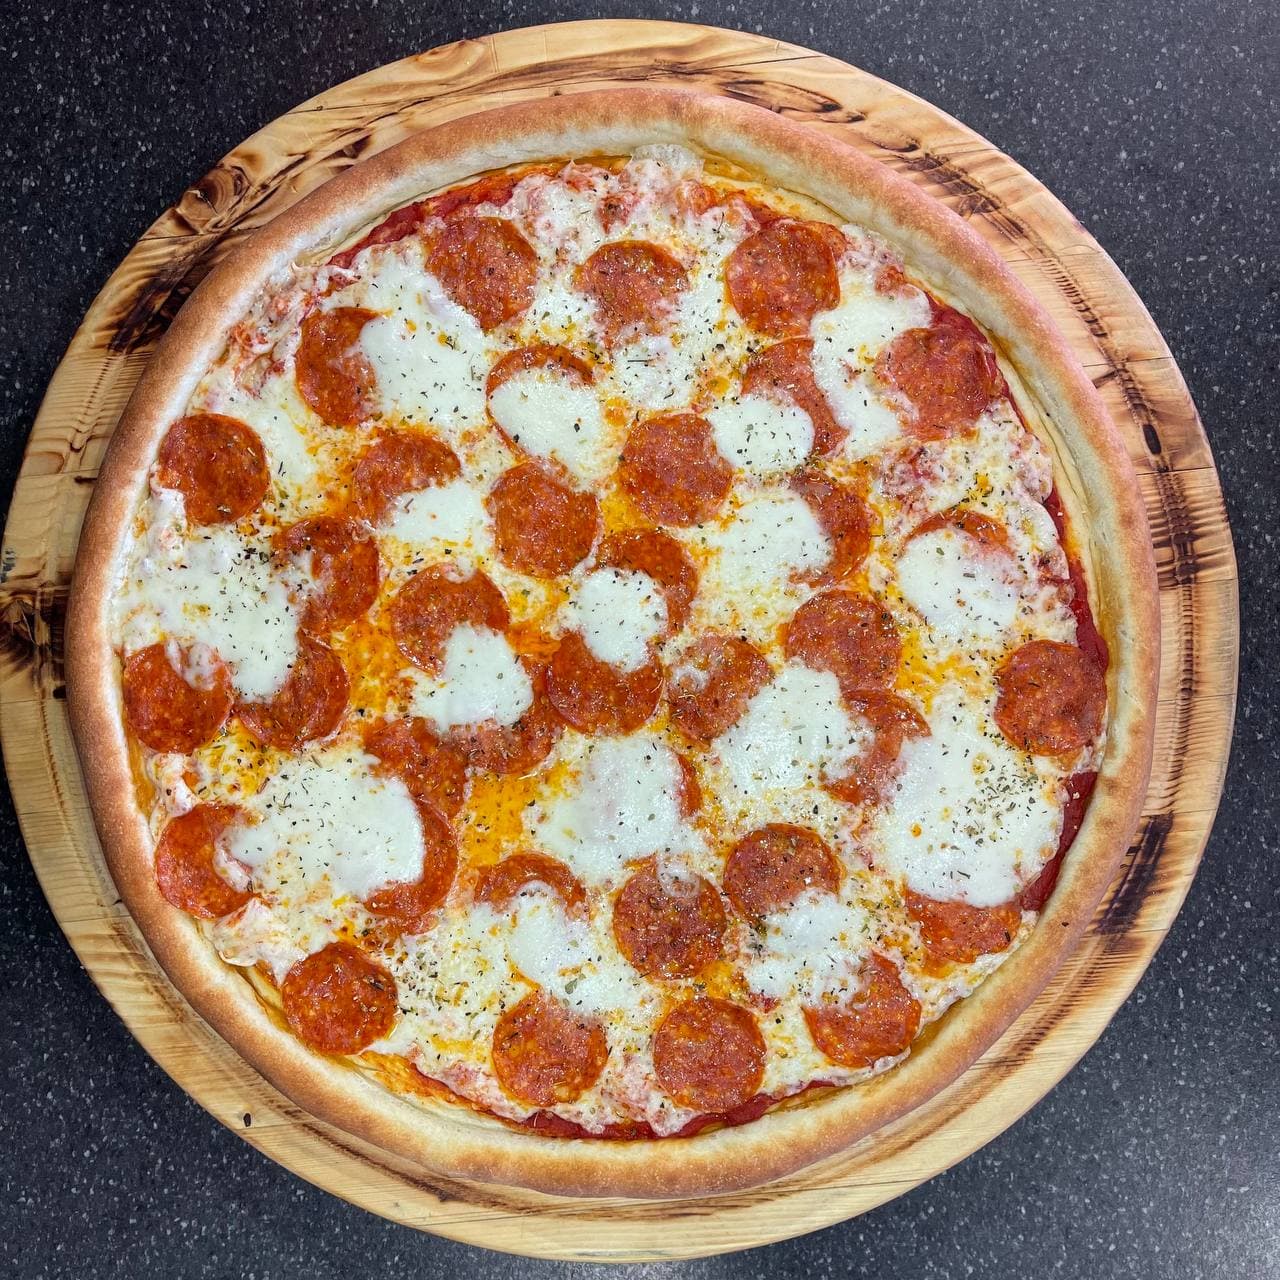 состав пиццы пепперони фреш фото 76